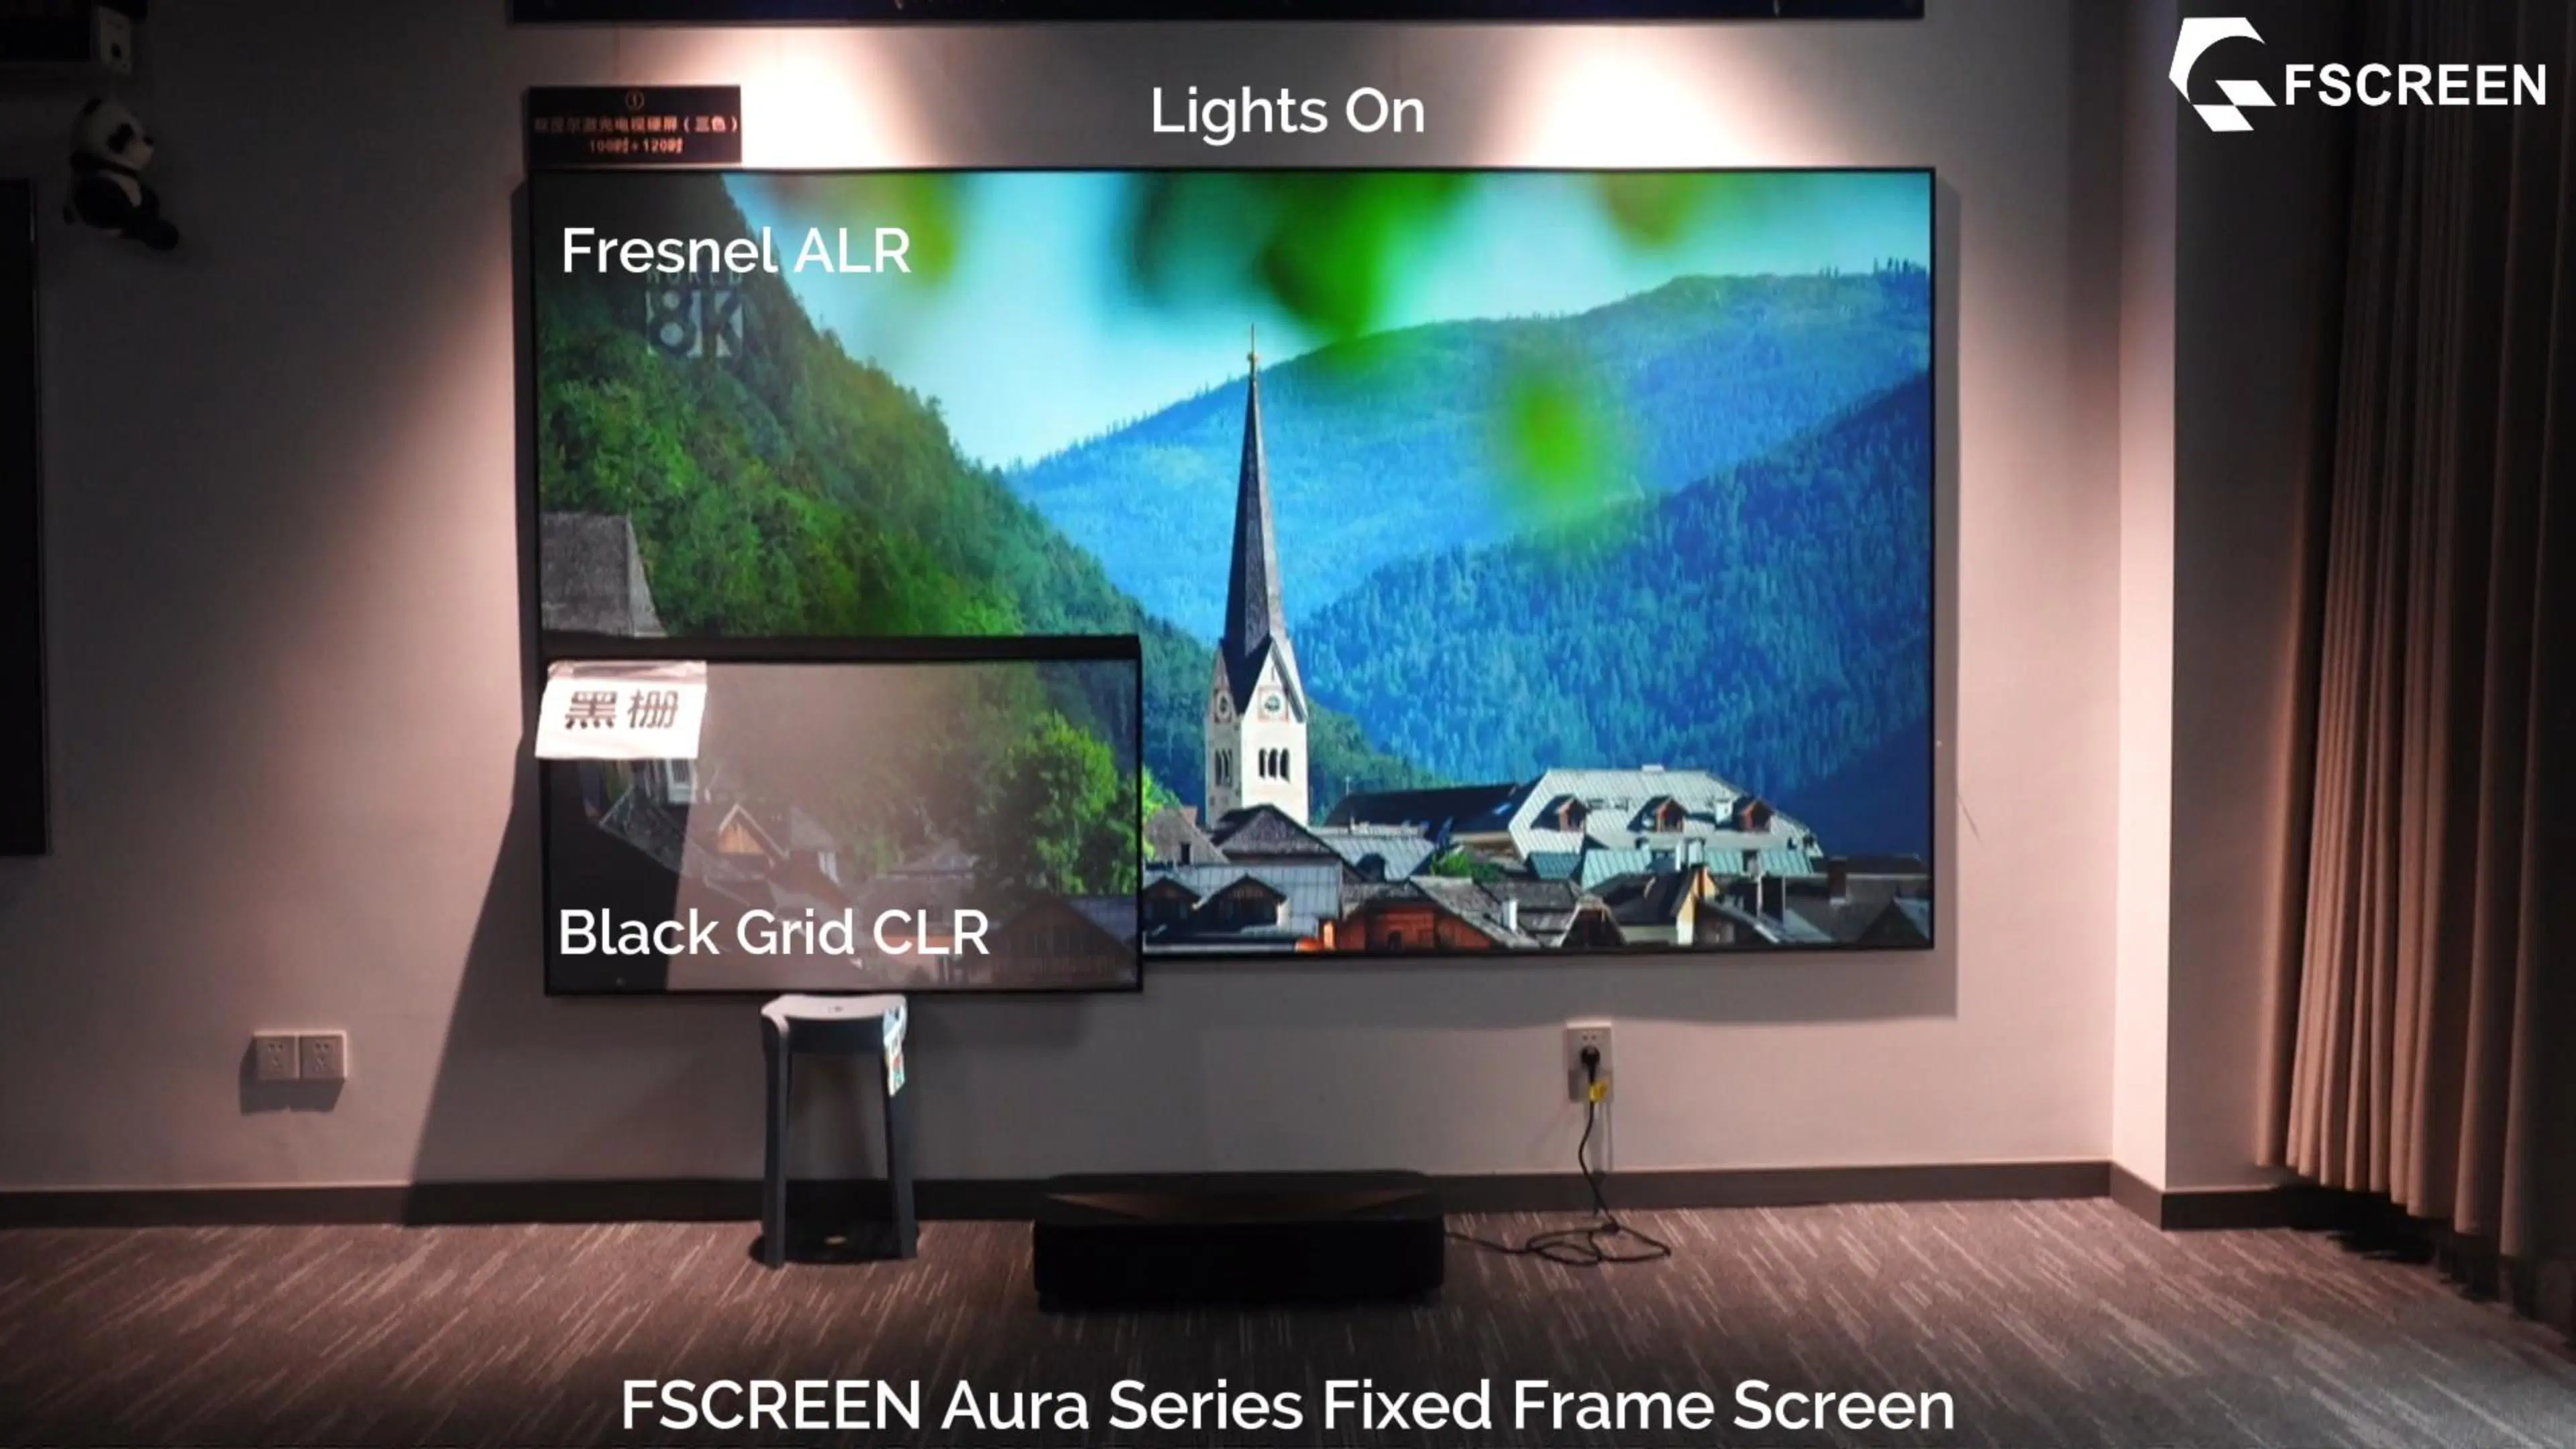 Écran de projection ALR 120 pouces série aura Fscreen pour Ultra Téléviseurs laser à projection courte focale